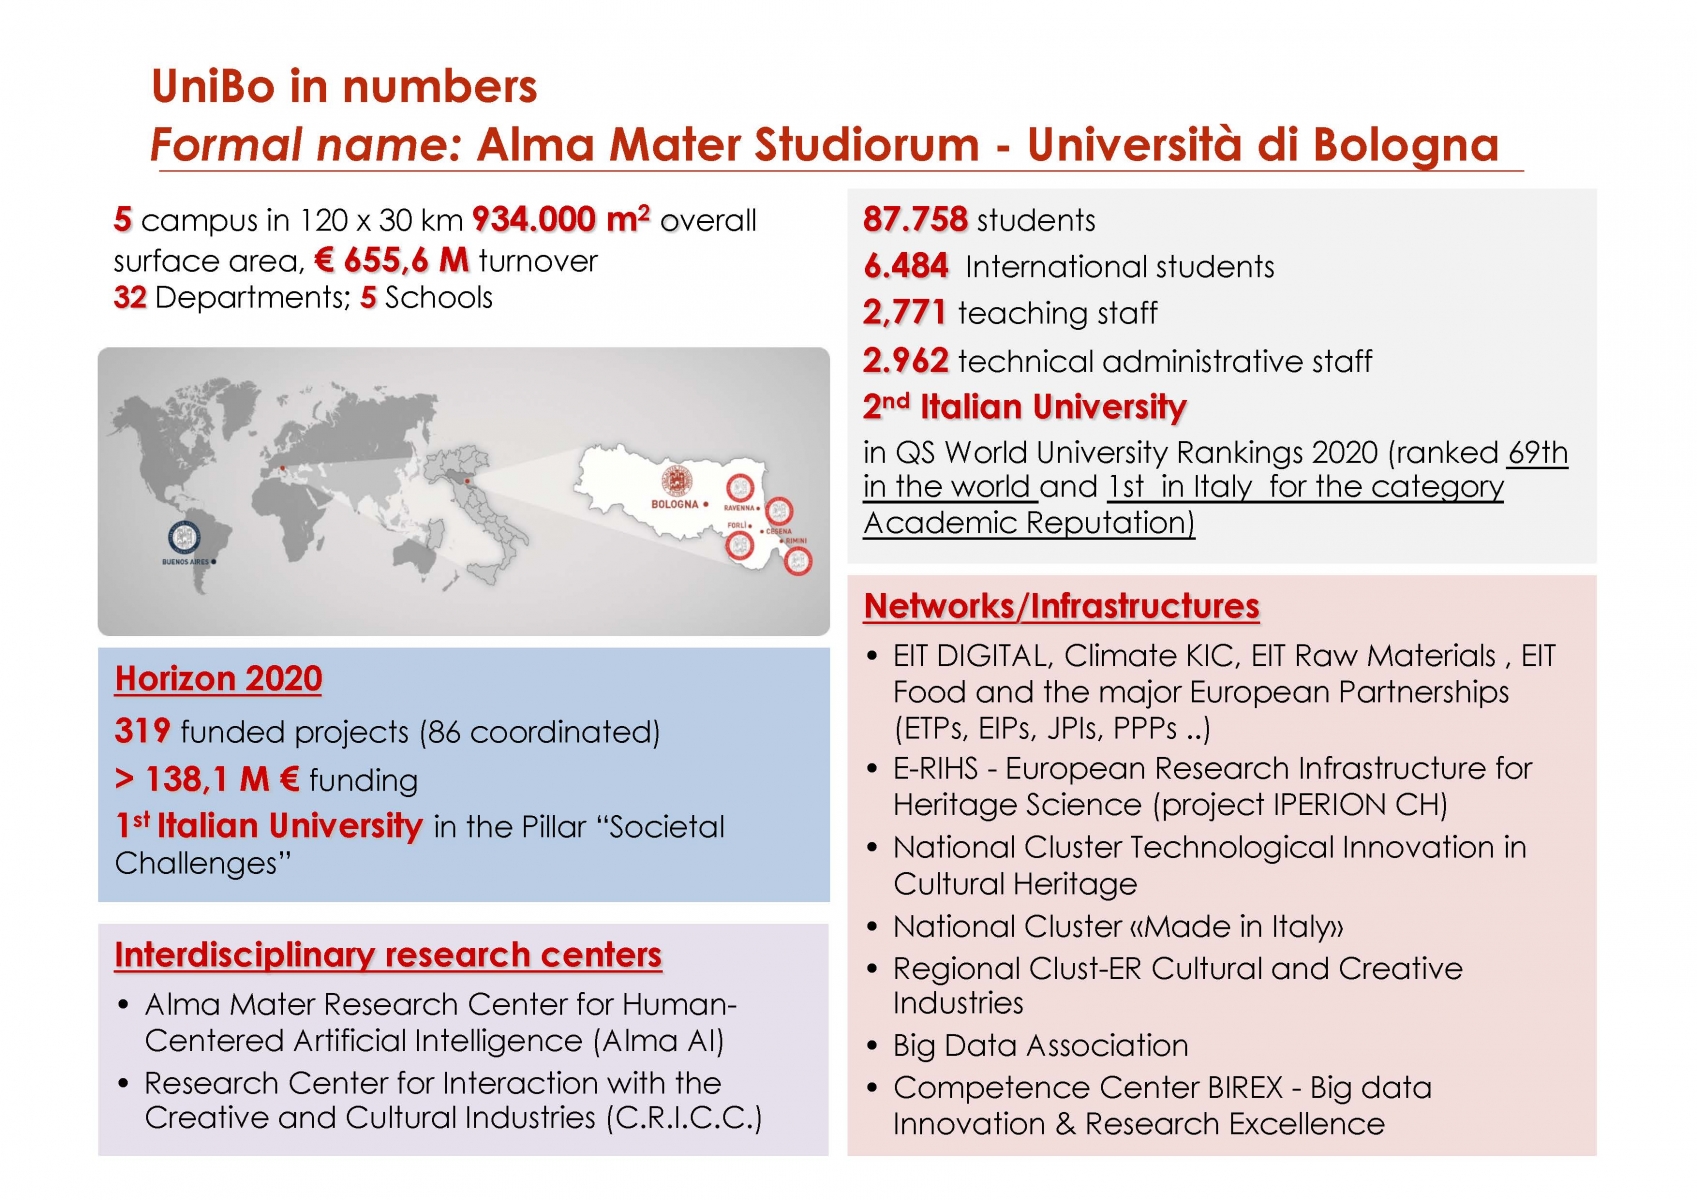 University of Bologna (pres.by Fabio Vitali)